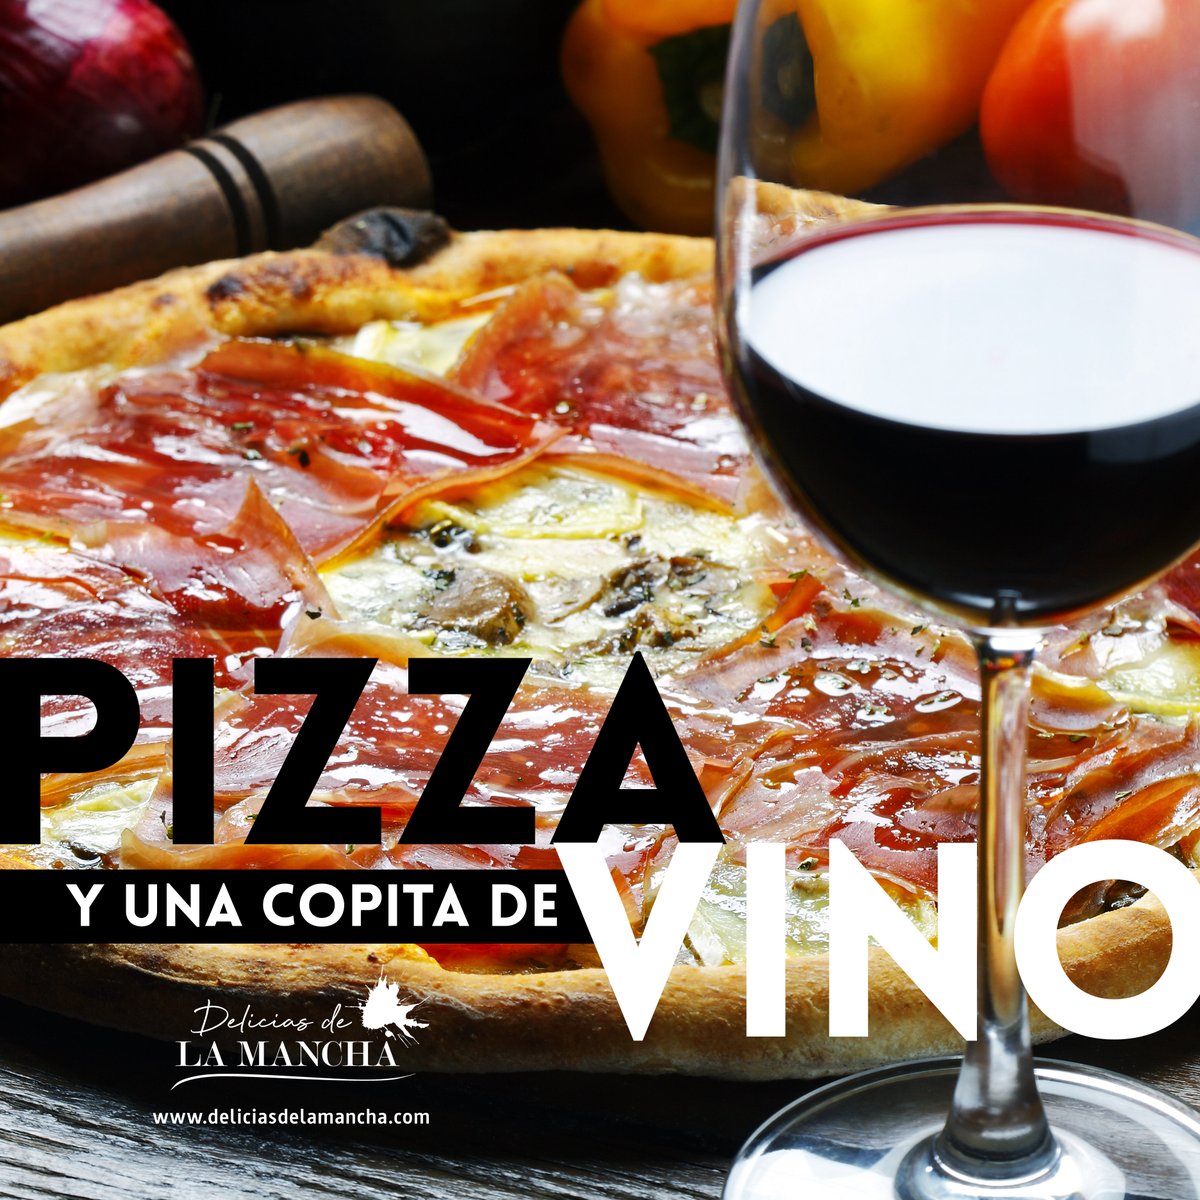 Una buena combinación para empezar la semana con alegría... ¡Vino 🍷 y pizza 🍕!
.
#deliciasdelamancha #vinoypizza #vinosdecalidad #vinosdelamancha #winelover #maridajes #LaMancha #gastronomía